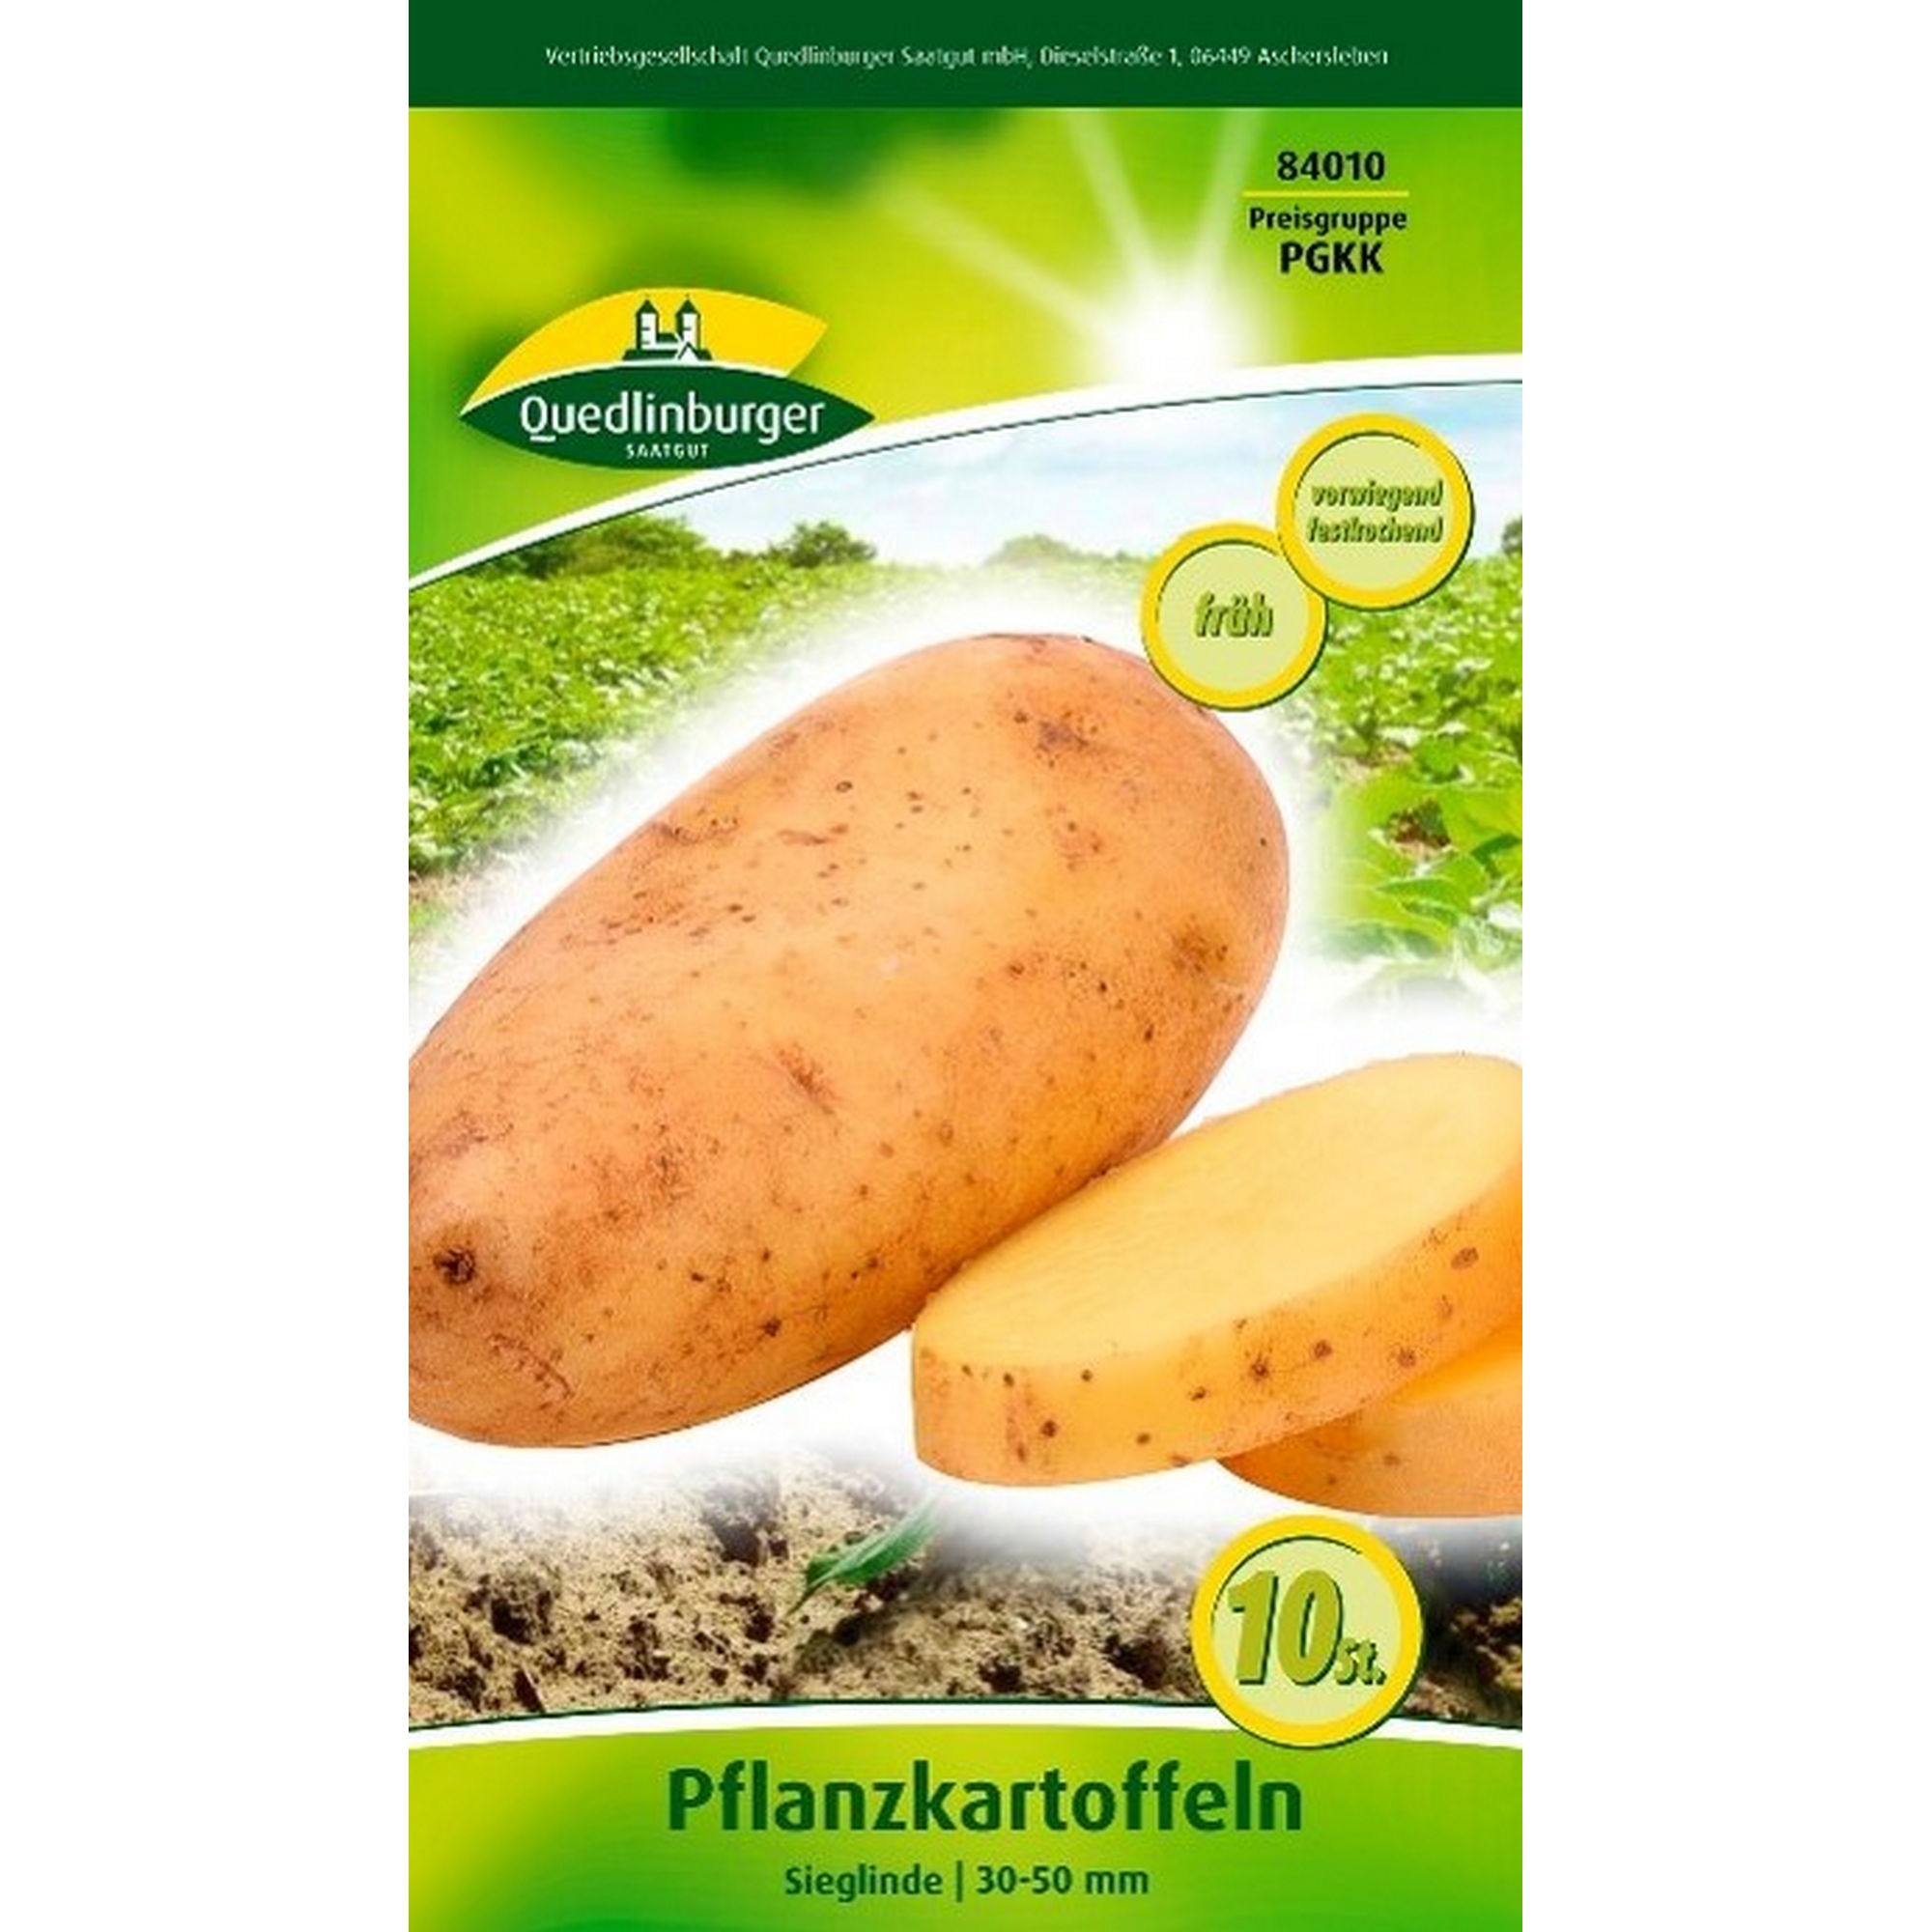 Pflanzkartoffel 'Sieglinde' gelb 10 Stück + product picture